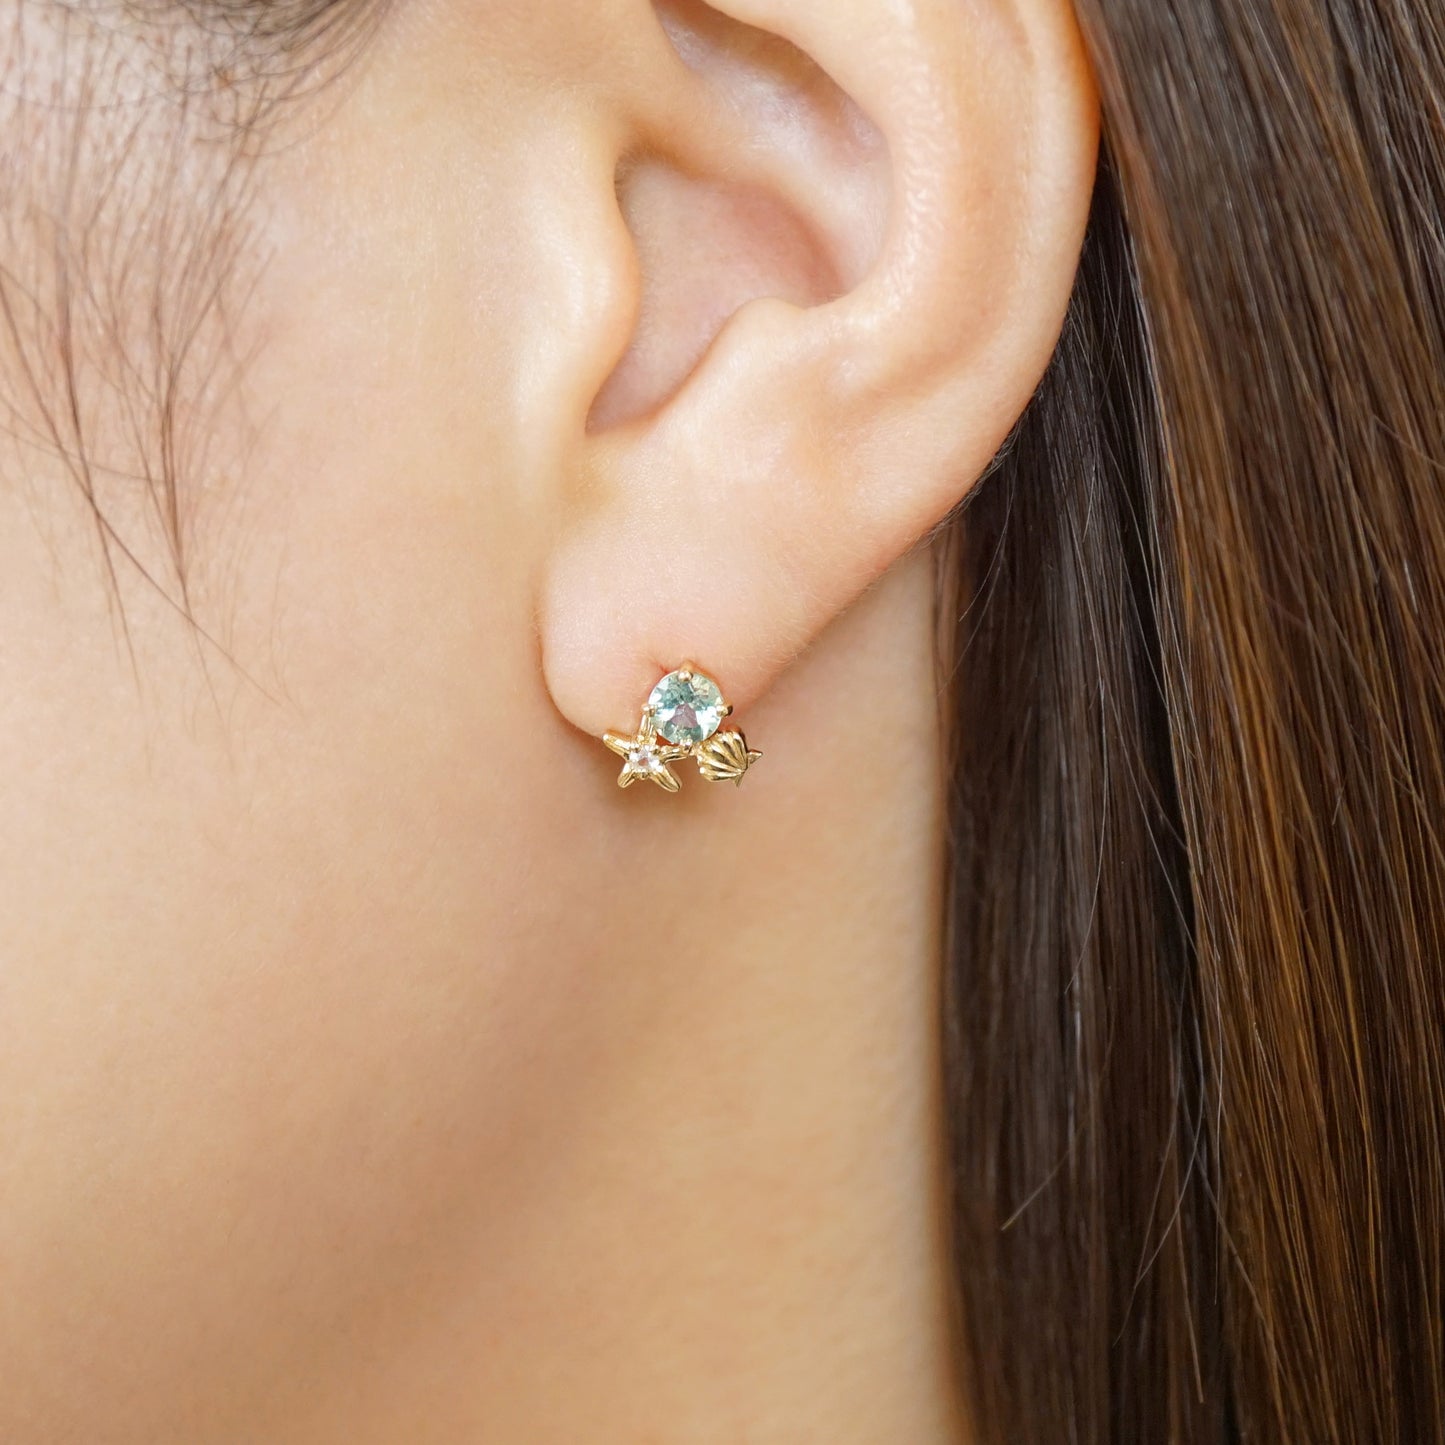 [Solo Earring] 18K/10K Shell Single Earring (Yellow Gold) - Model Image